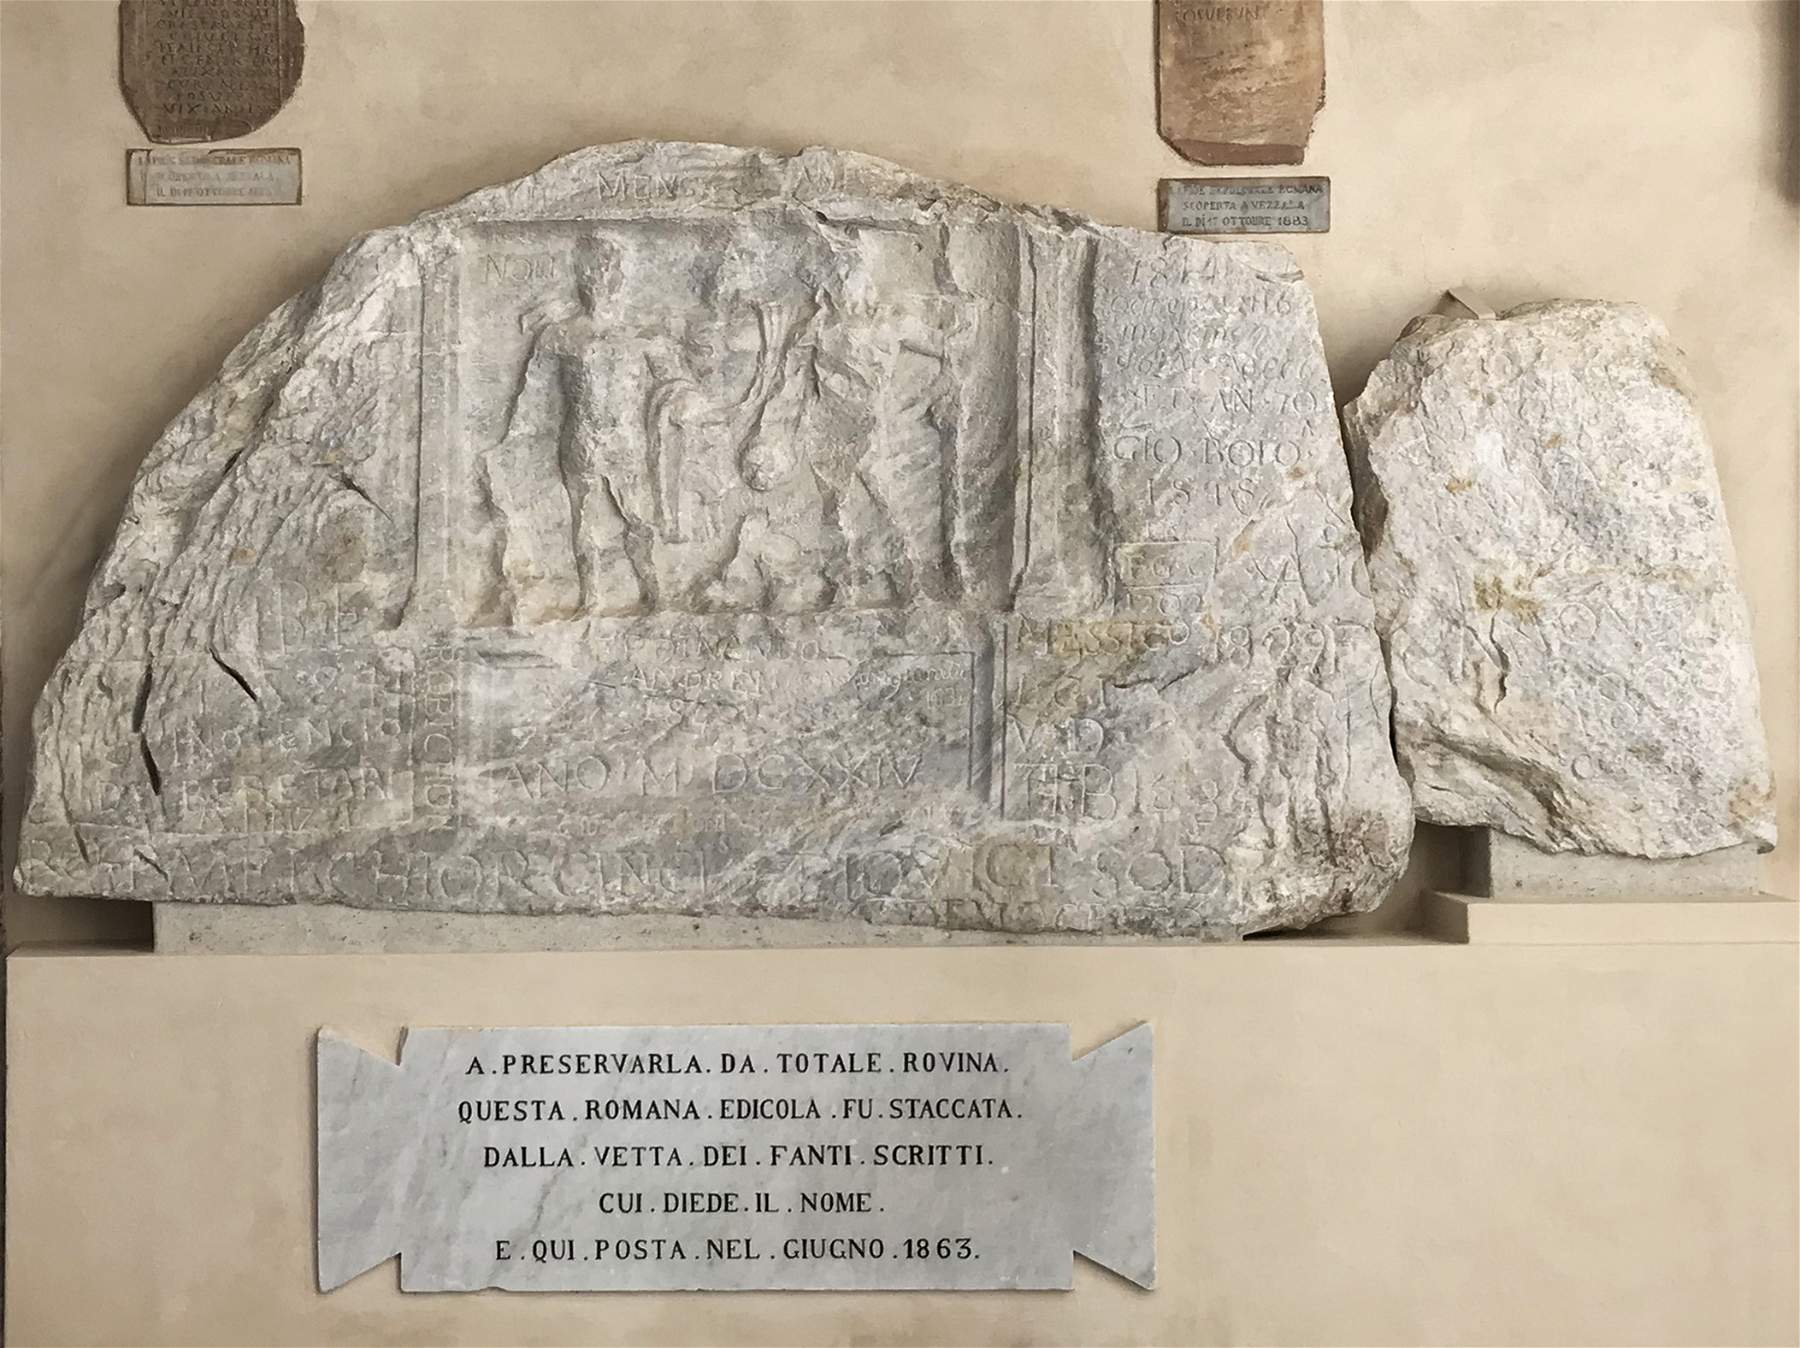 Carrara, finishes restoration of the Edicola di Fantiscritti, 3rd century bas-relief symbol of the city